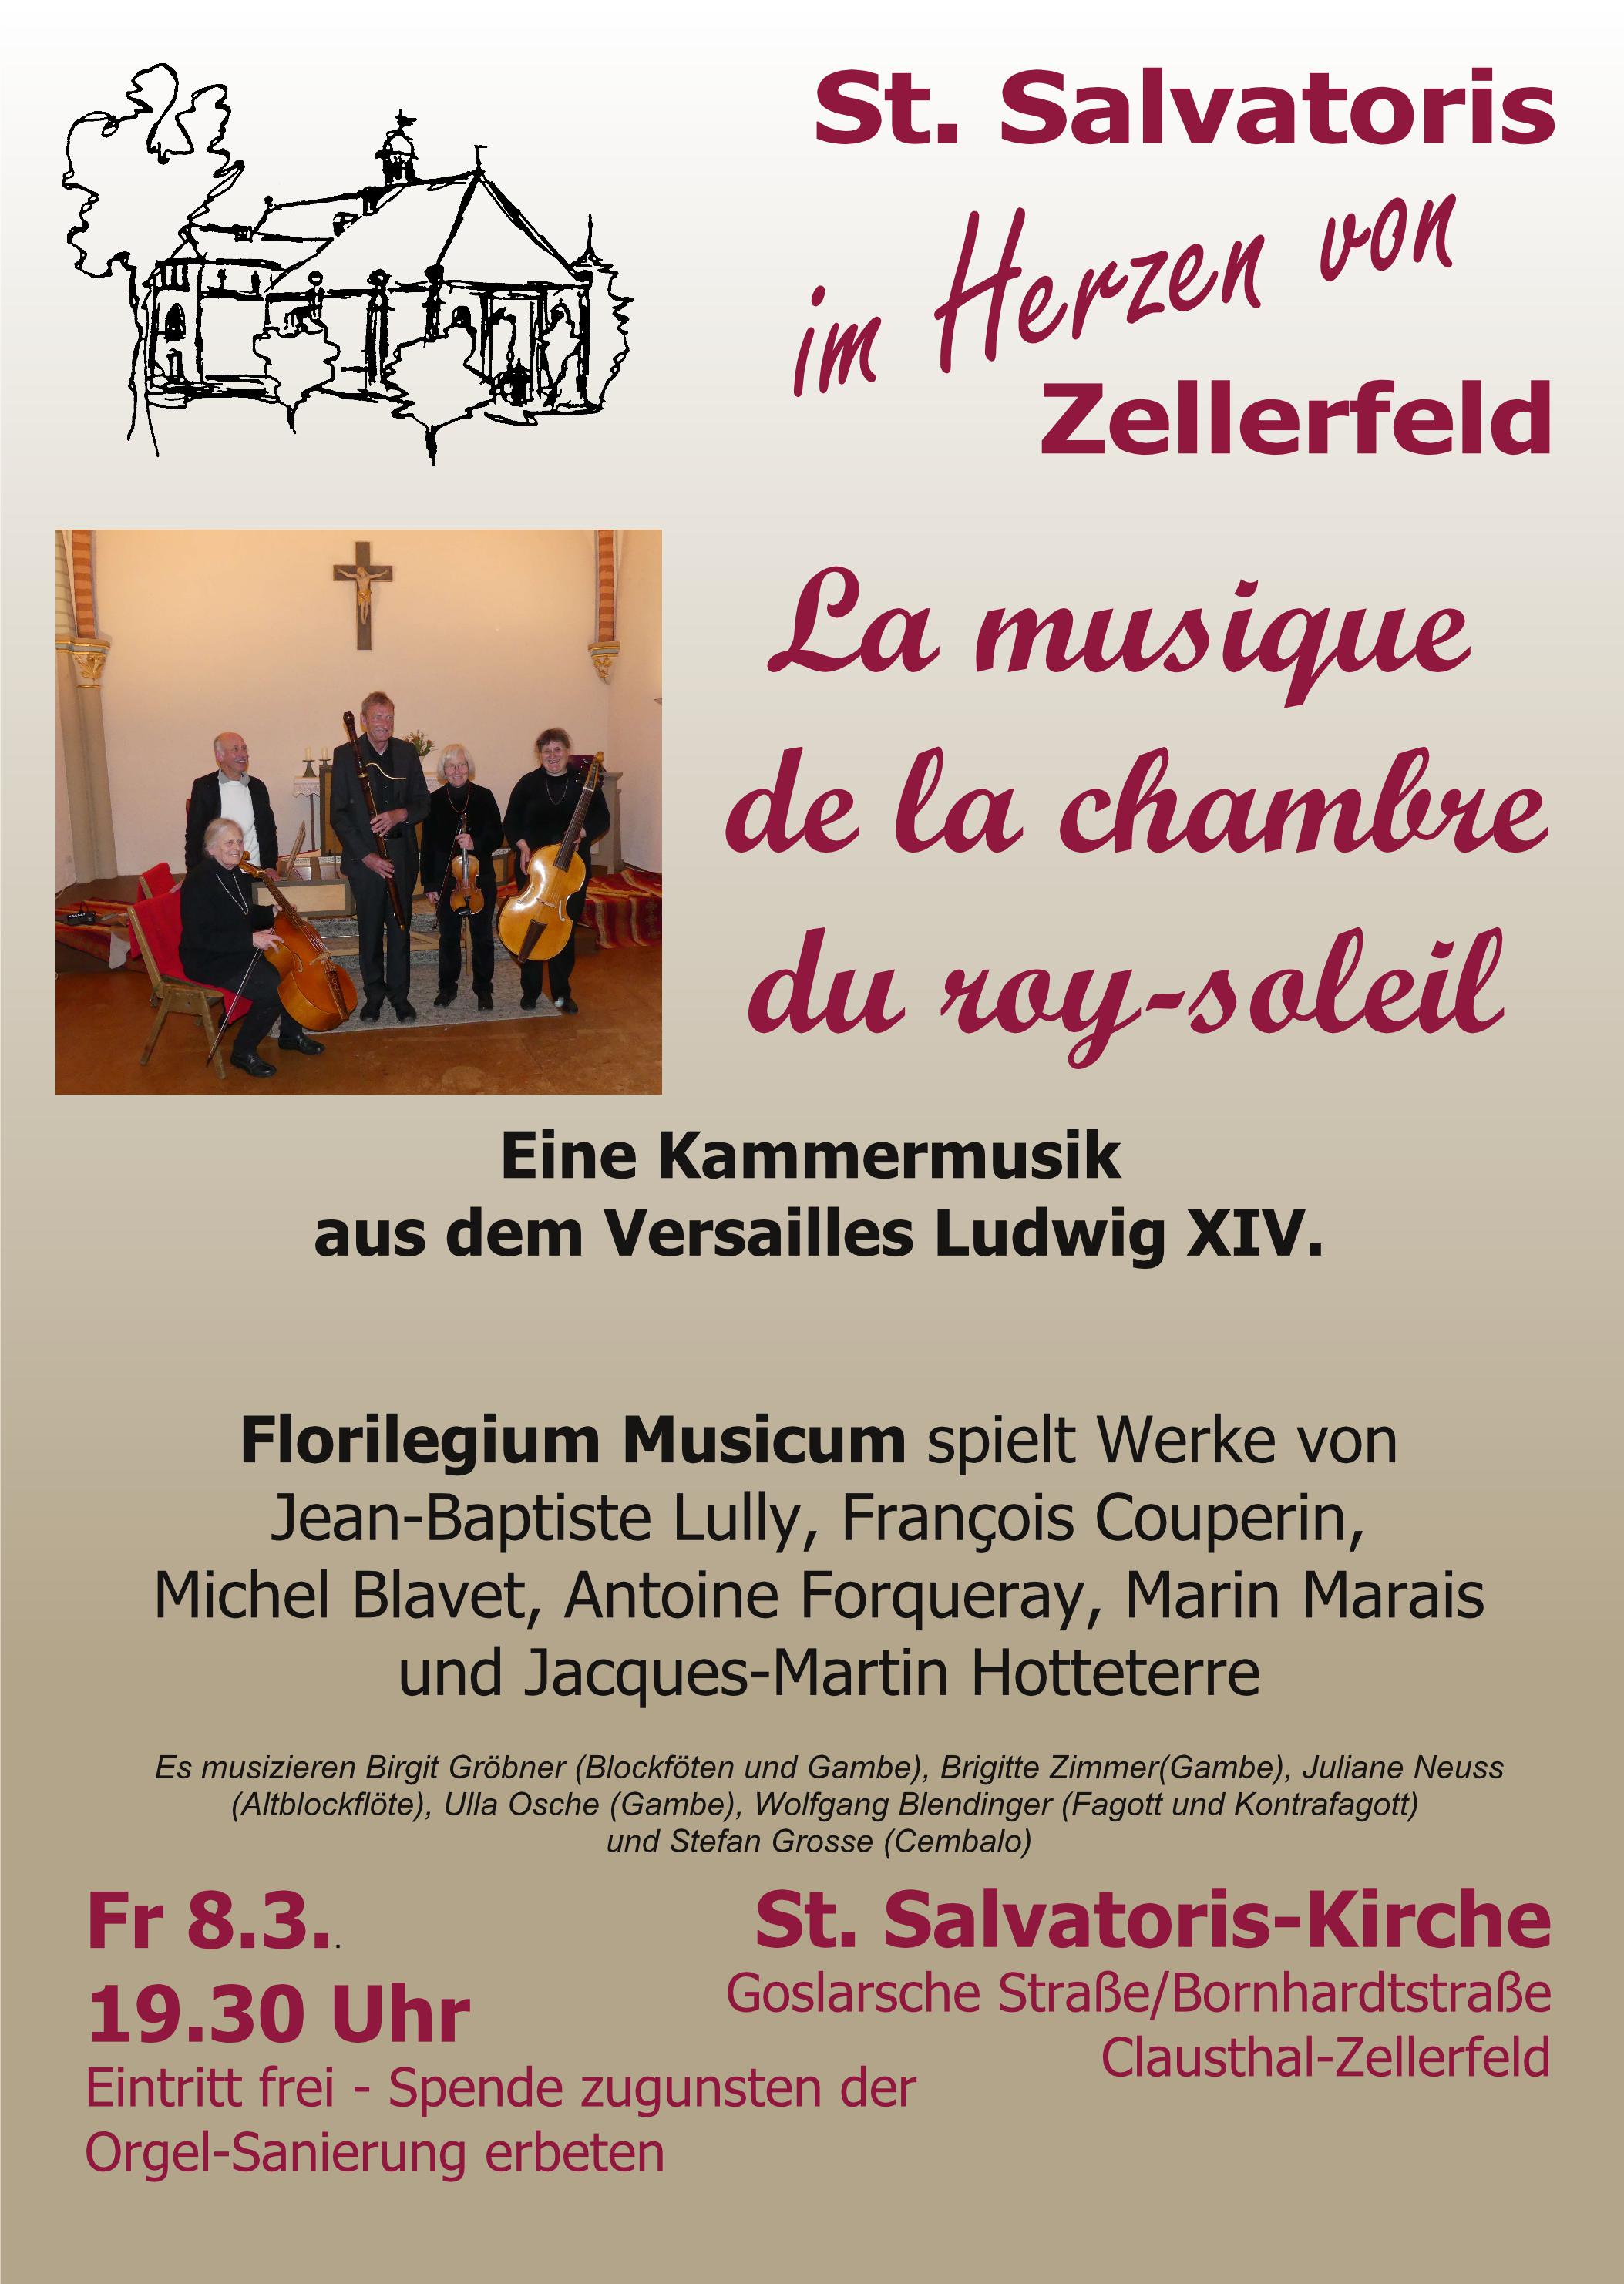 Konzert Florilegium Musicum 08.03.2019